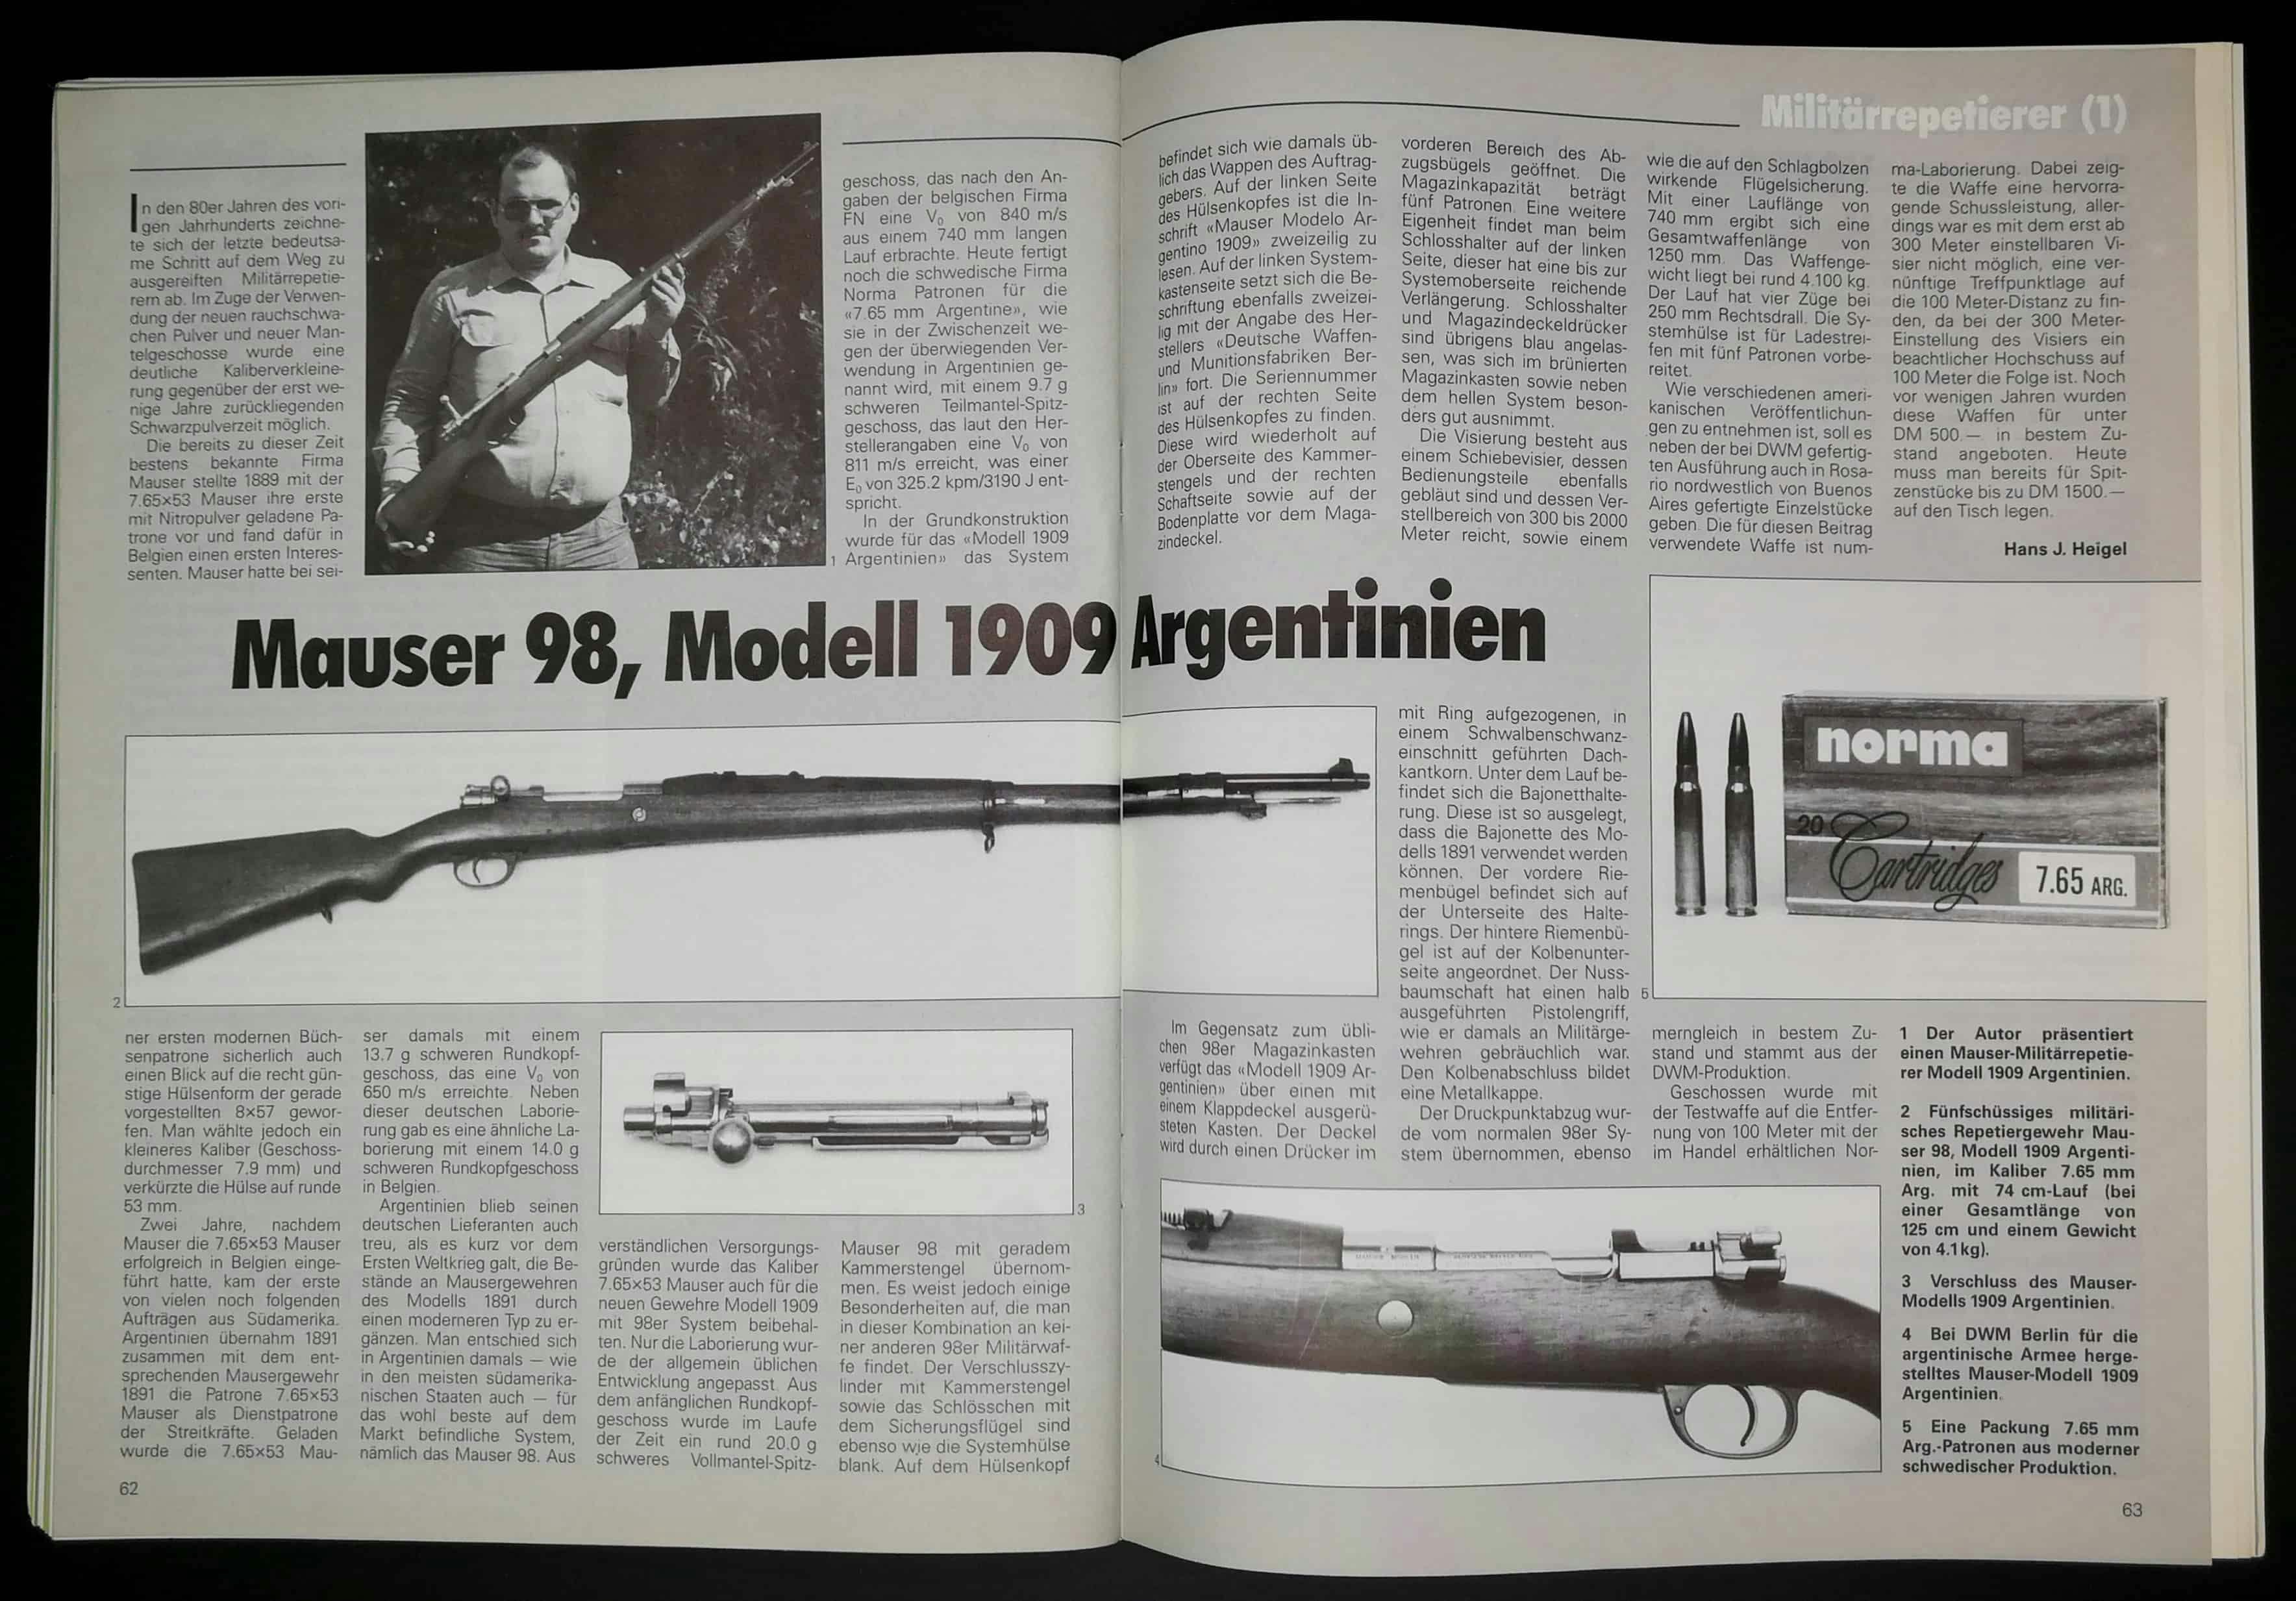 Mauservariationen gibt und gab es viele. Hier das Argentinische Modell 1909.